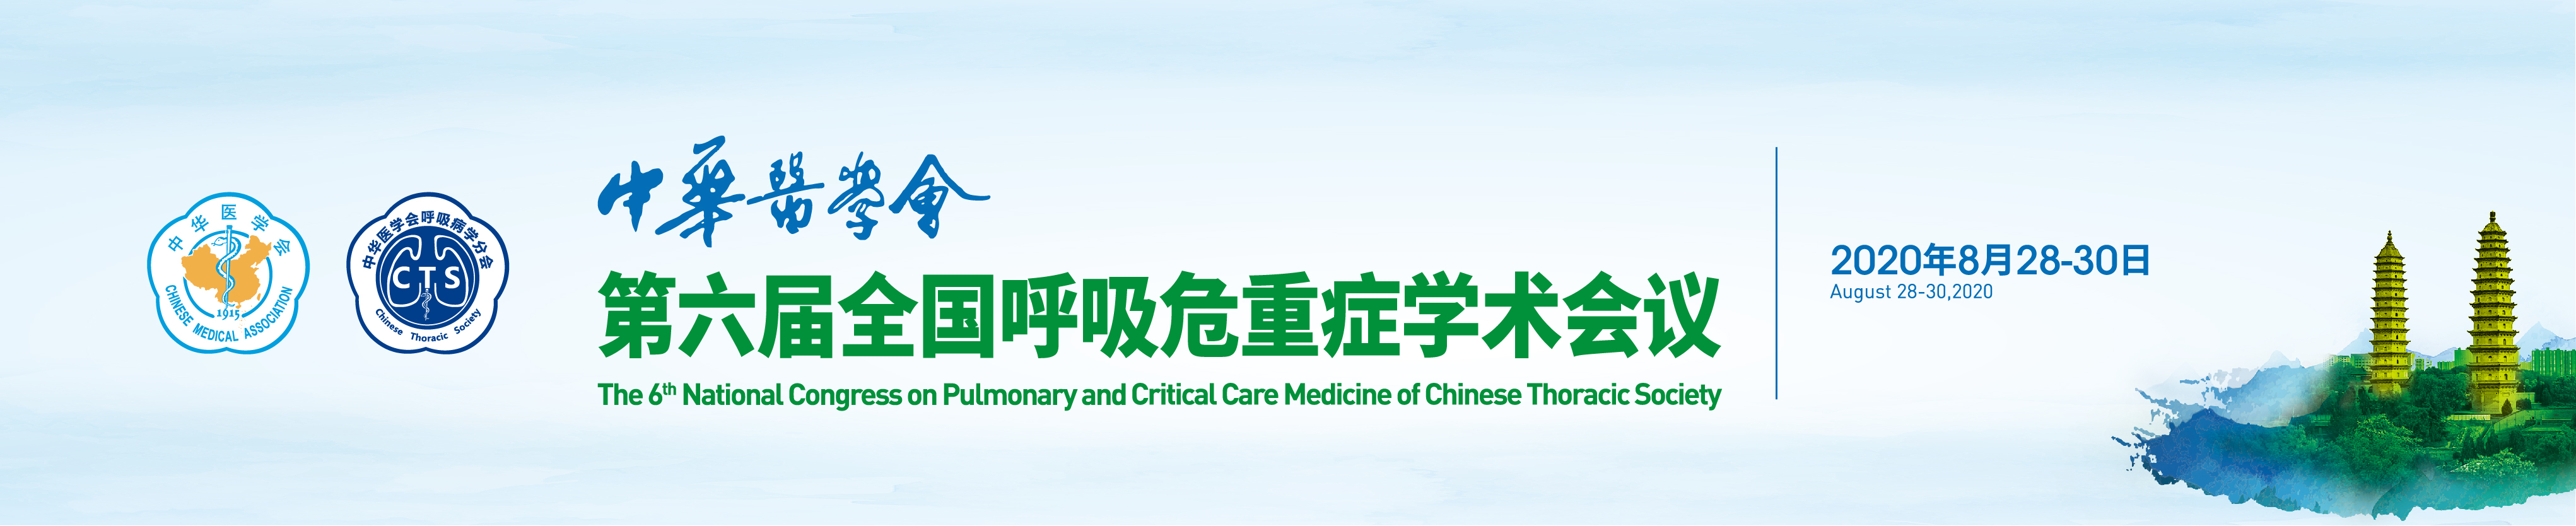 中华医学会第六届全国呼吸危重症学术会议